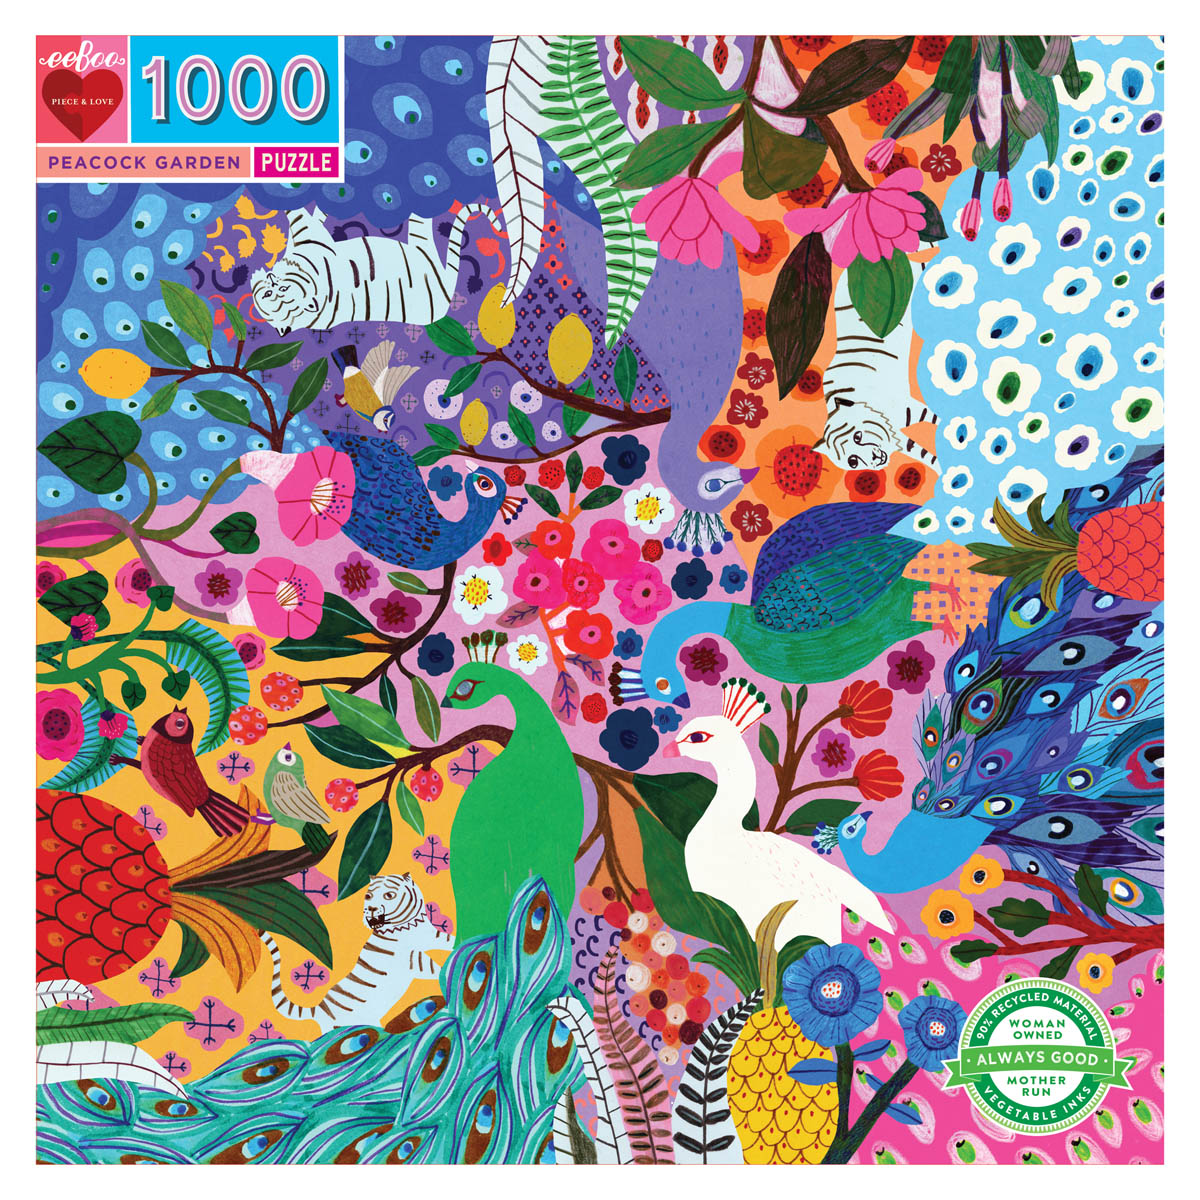 Peacock Garden - 1000 Pc puzzle